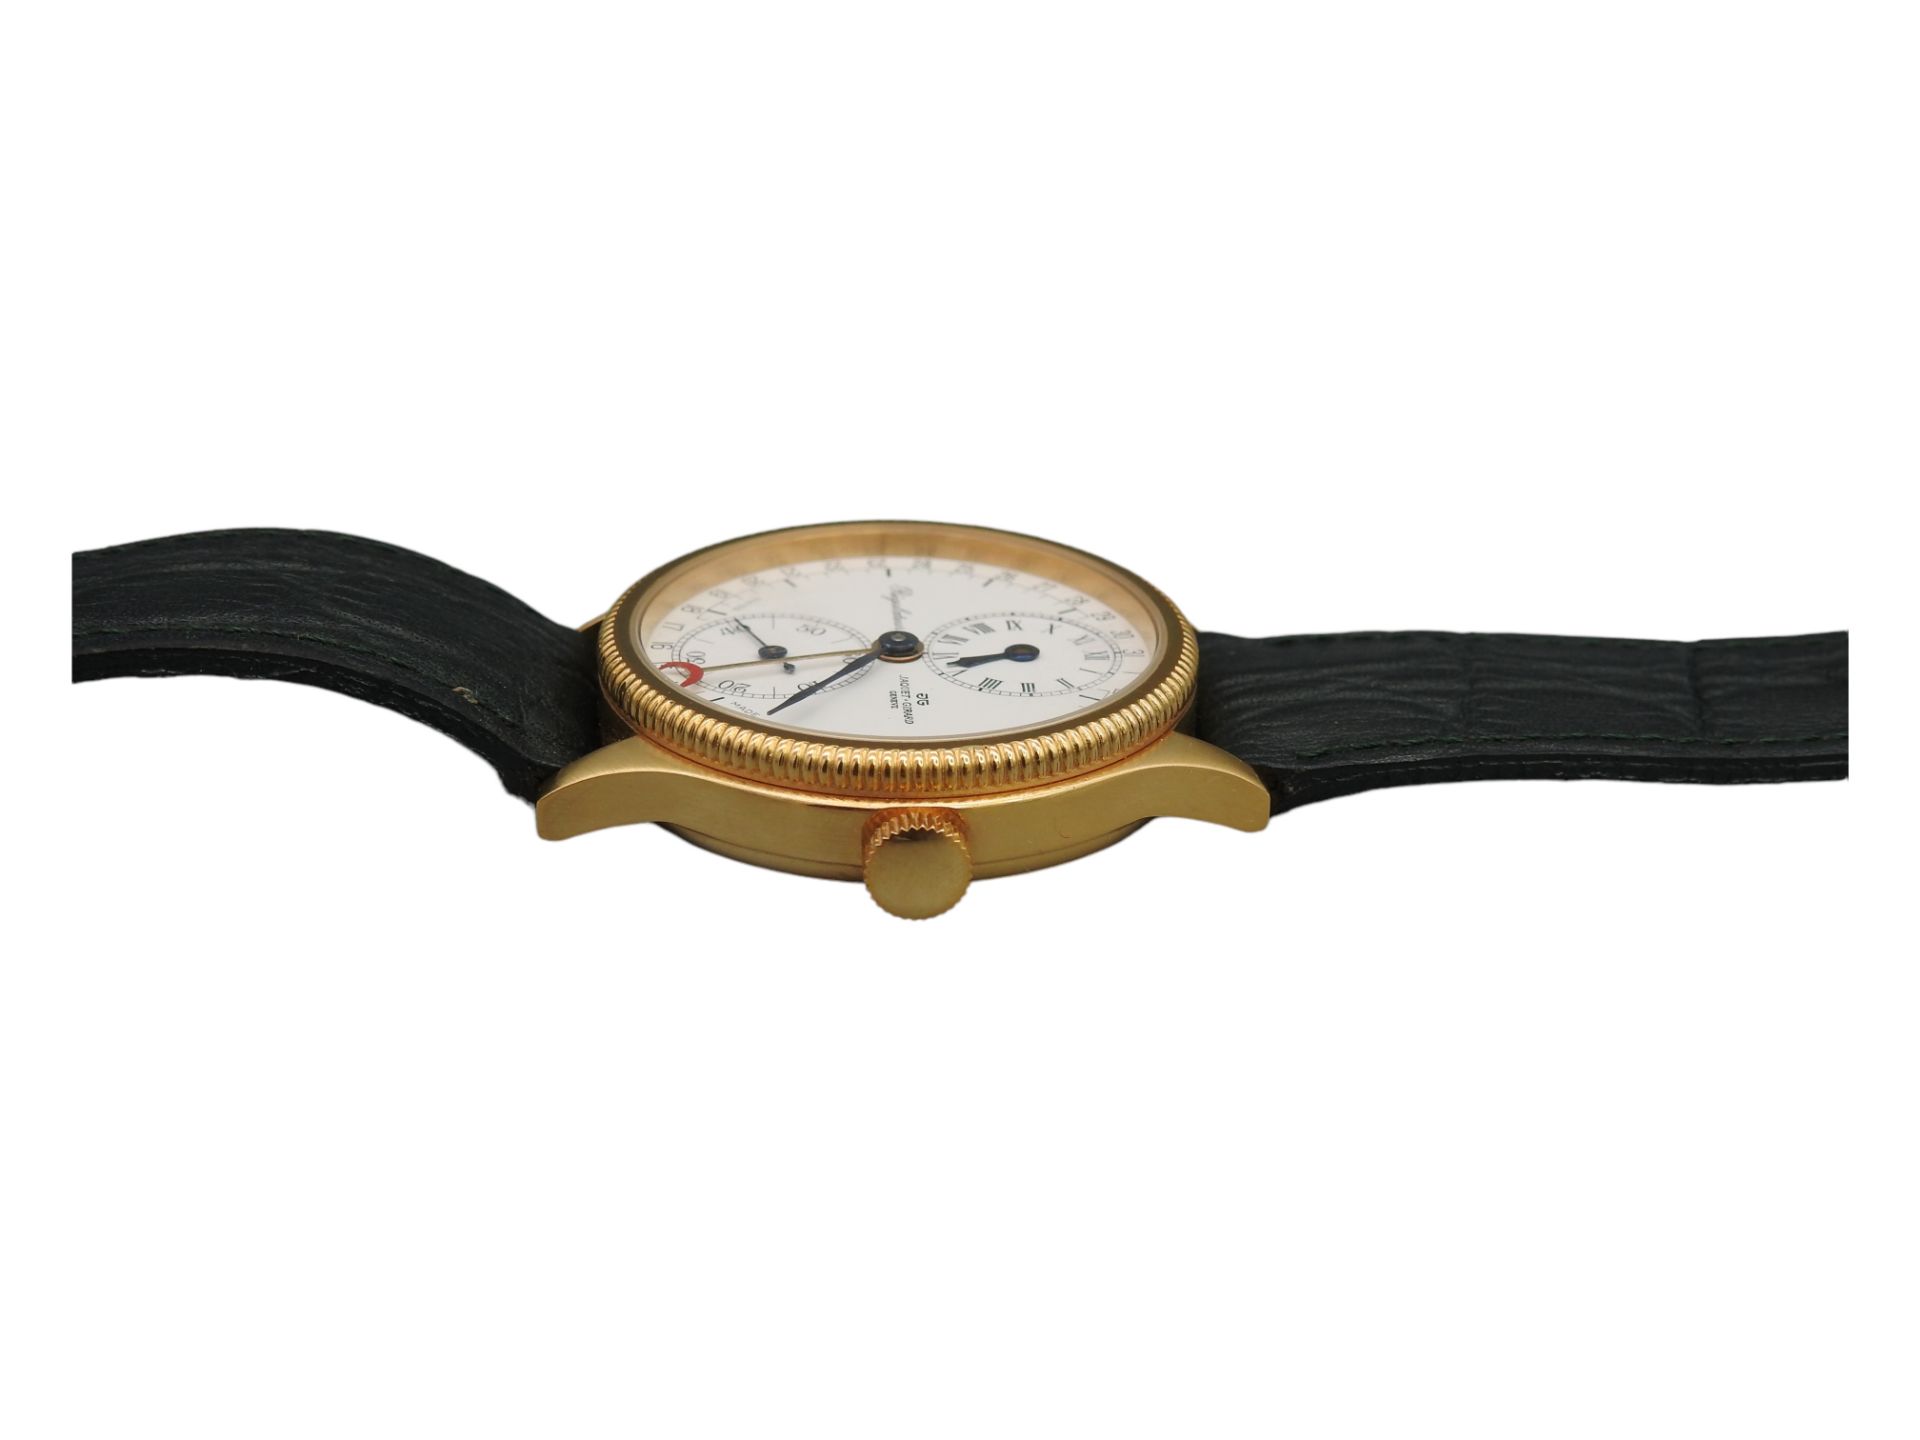 Armbanduhr "Régulateur" von Jaquet Girard Geneve - Image 4 of 5